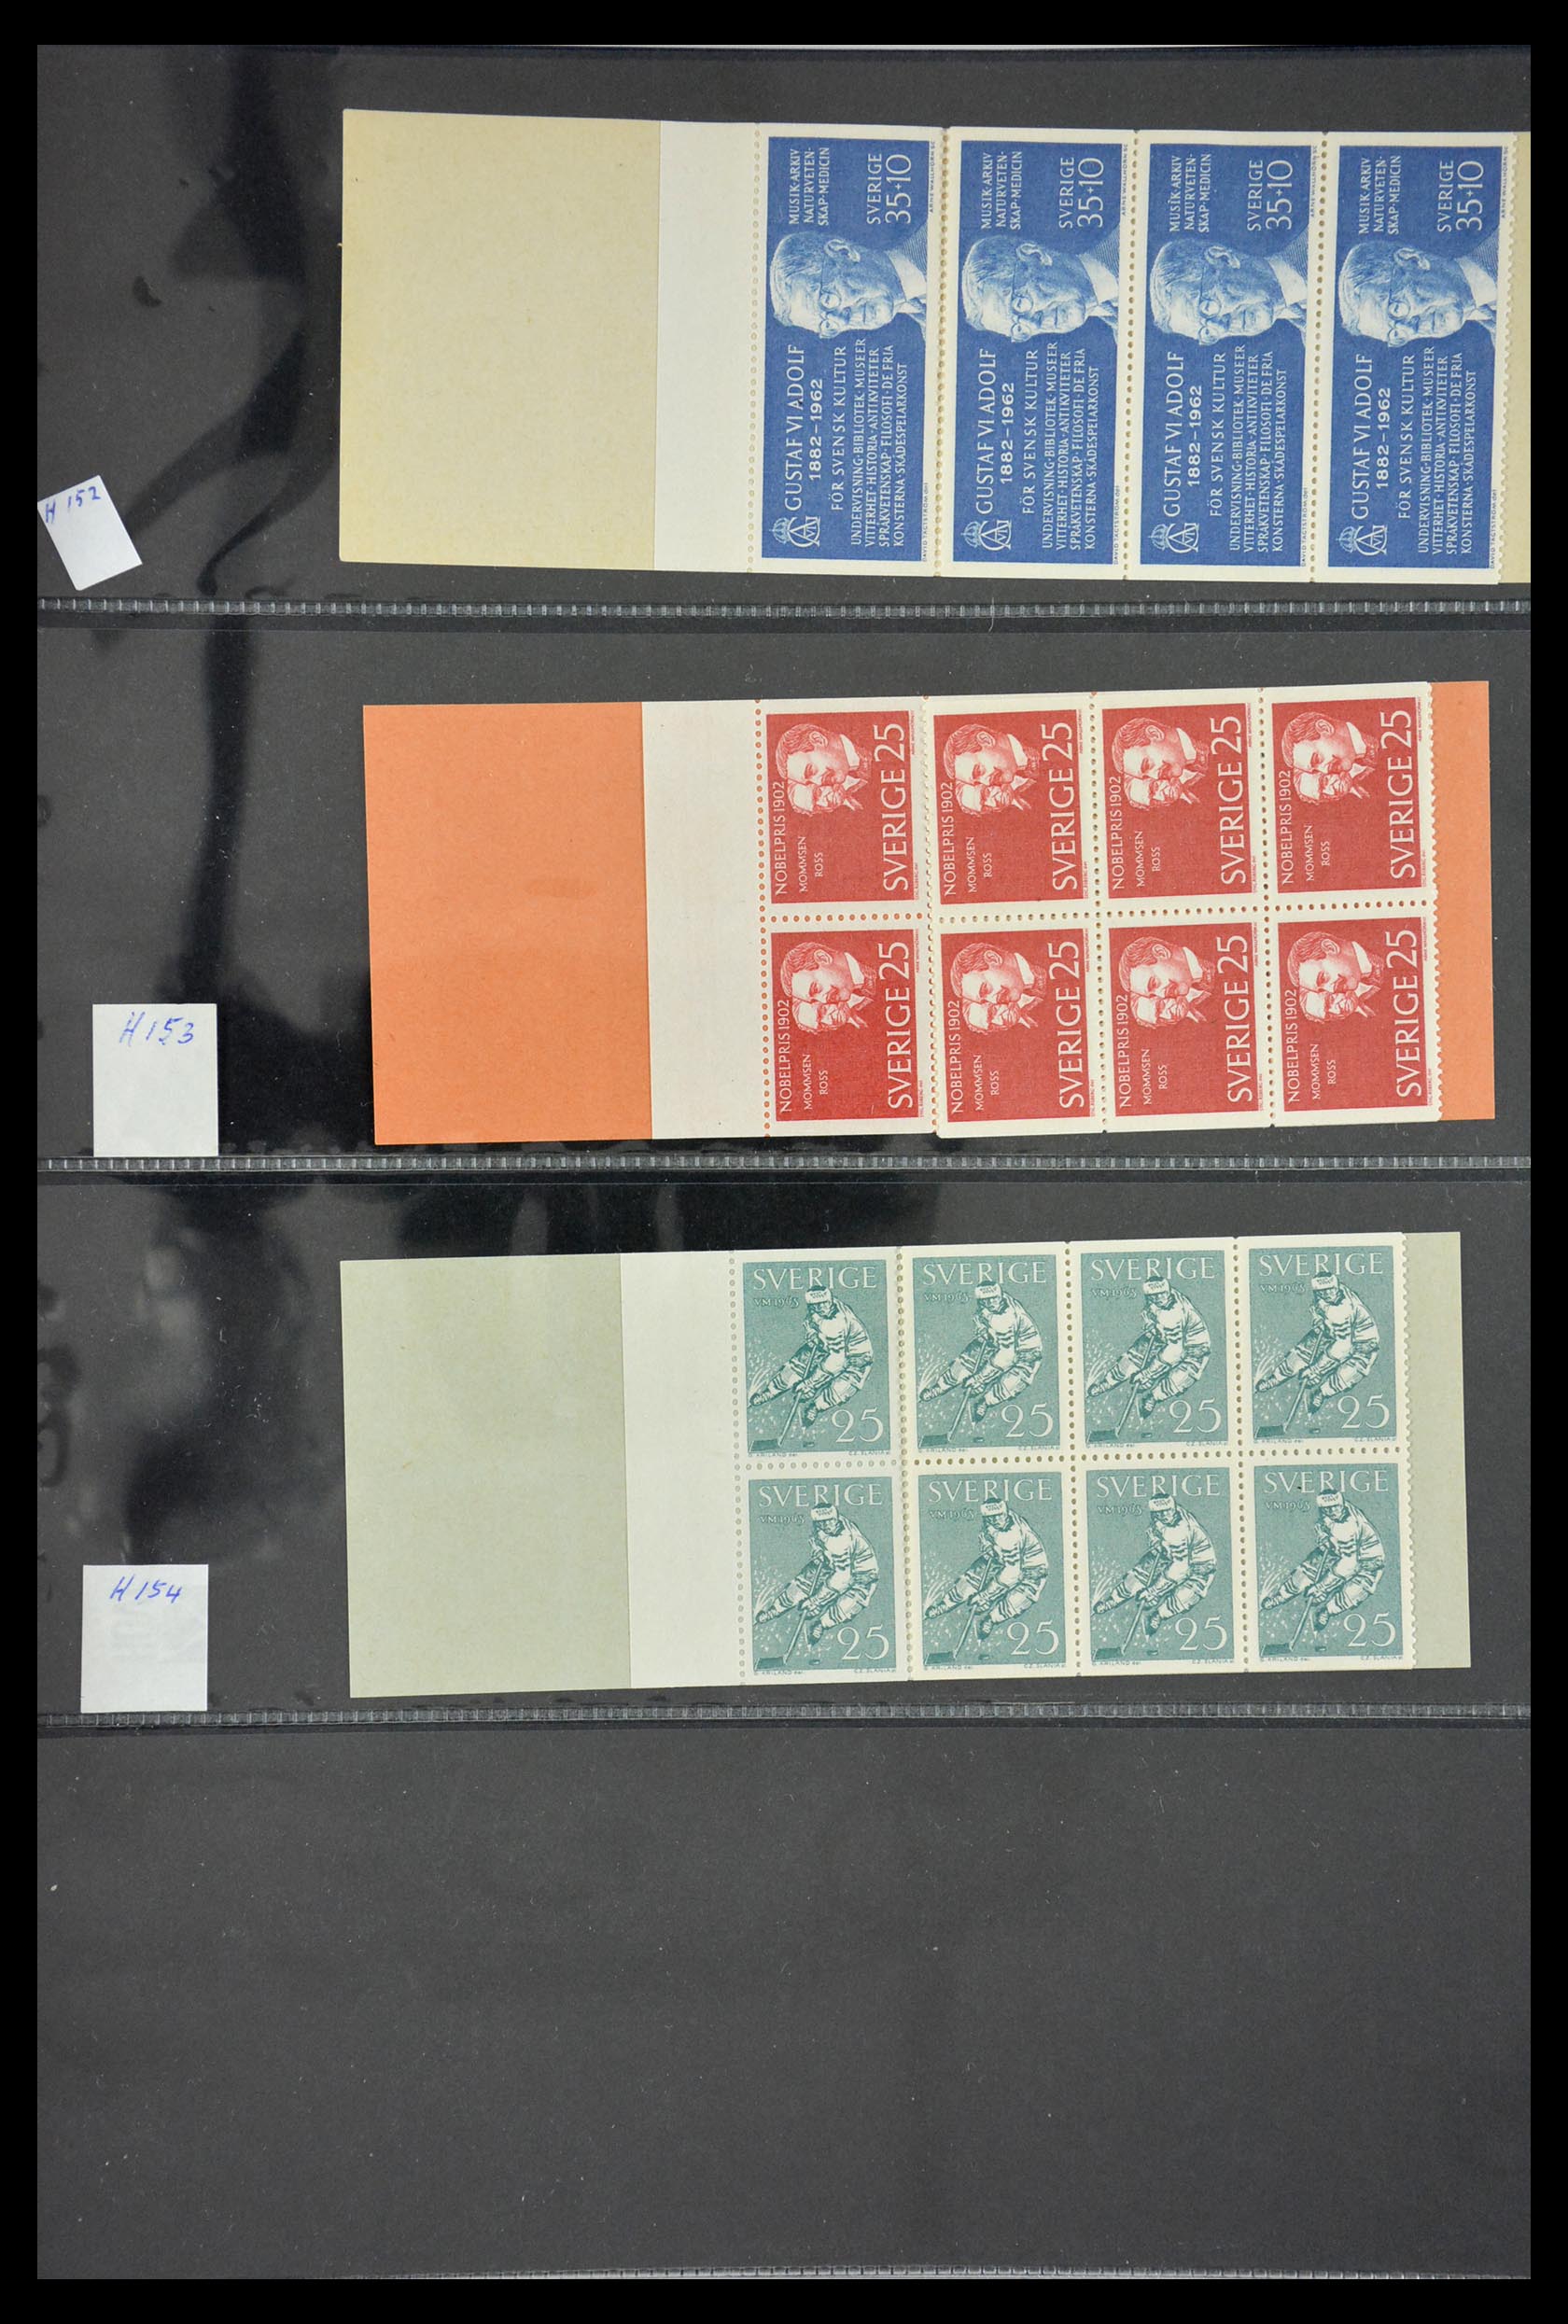 29368 031 - 29368 Sweden stamp booklets 1942-1996.